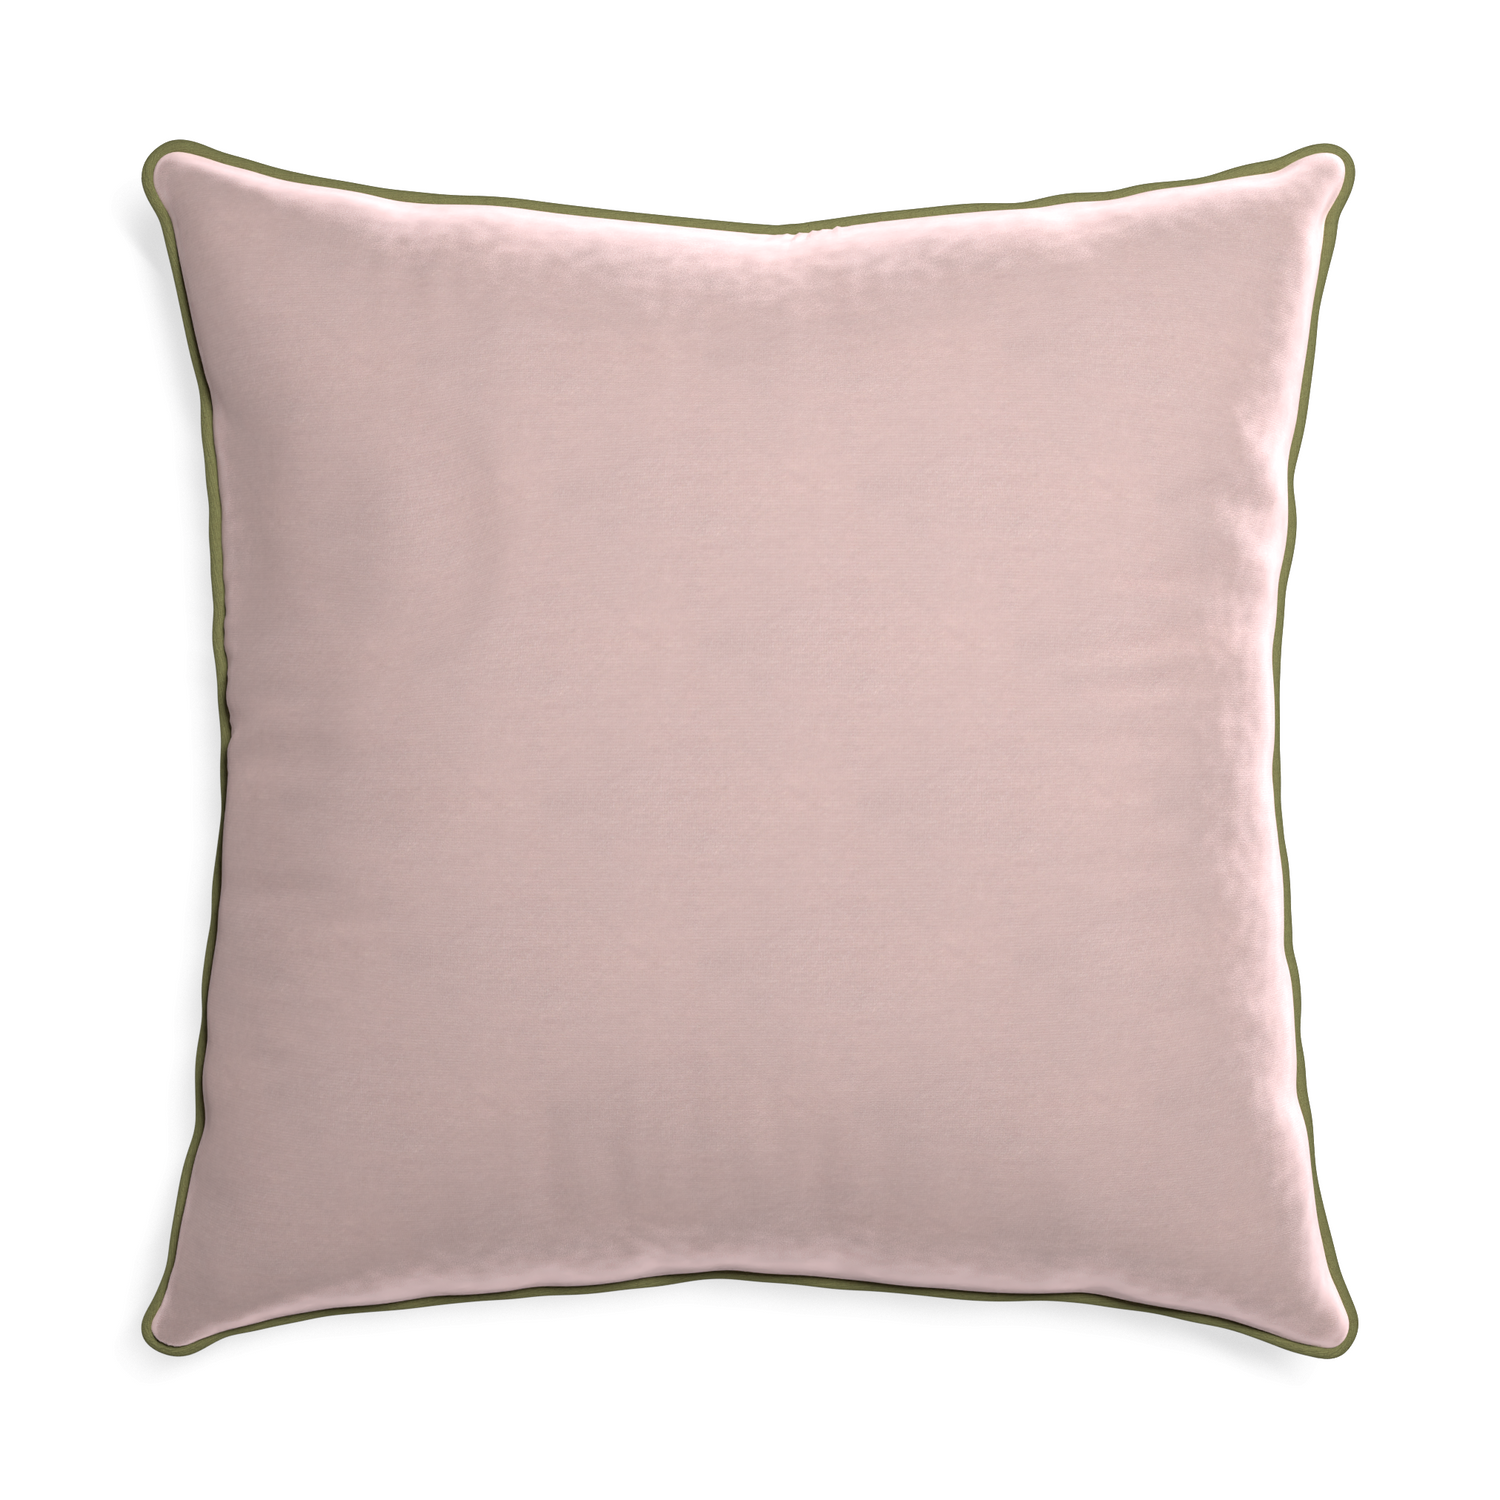 Euro-sham rose velvet custom pillow with moss piping on white background